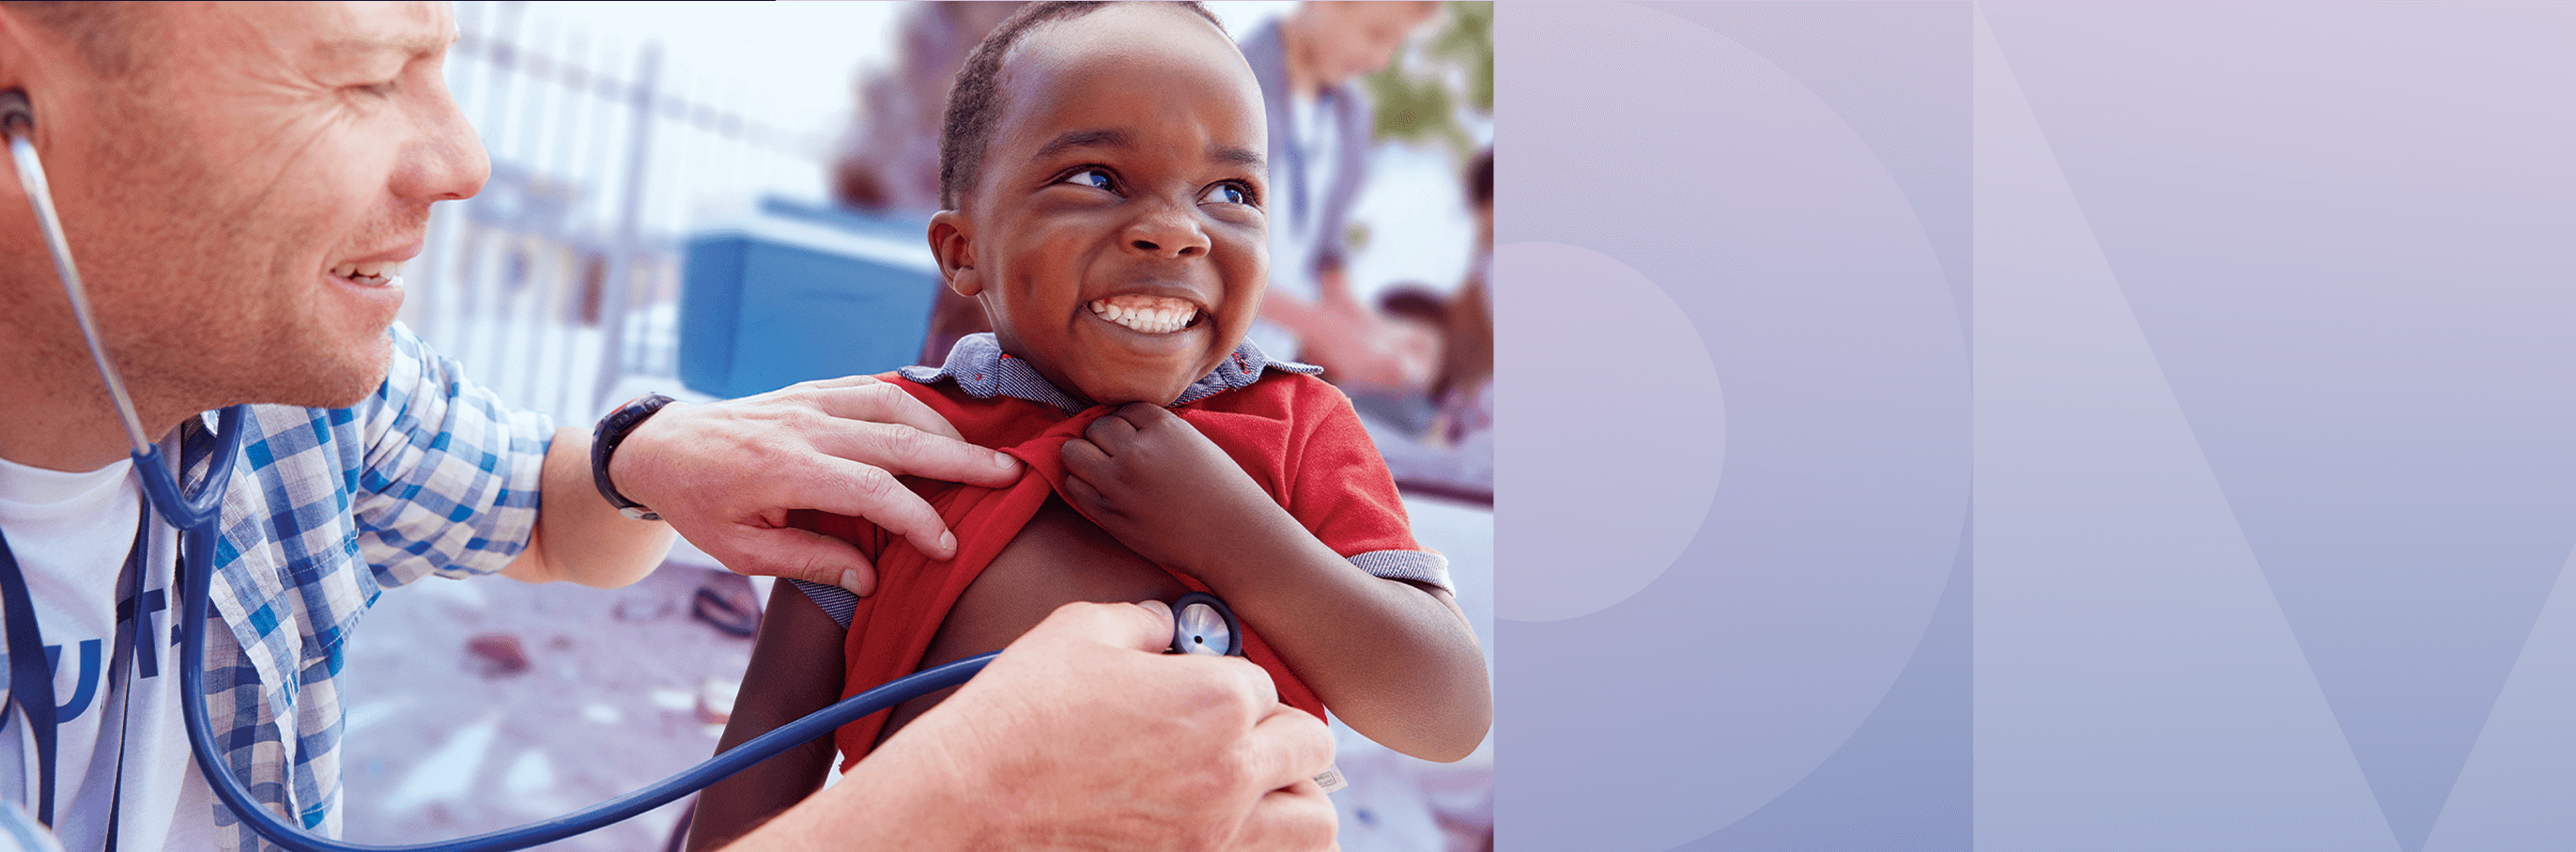 Un jeune enfant souriant par deux mains appliquant un stéthoscope sur la poitrine de l’enfant.